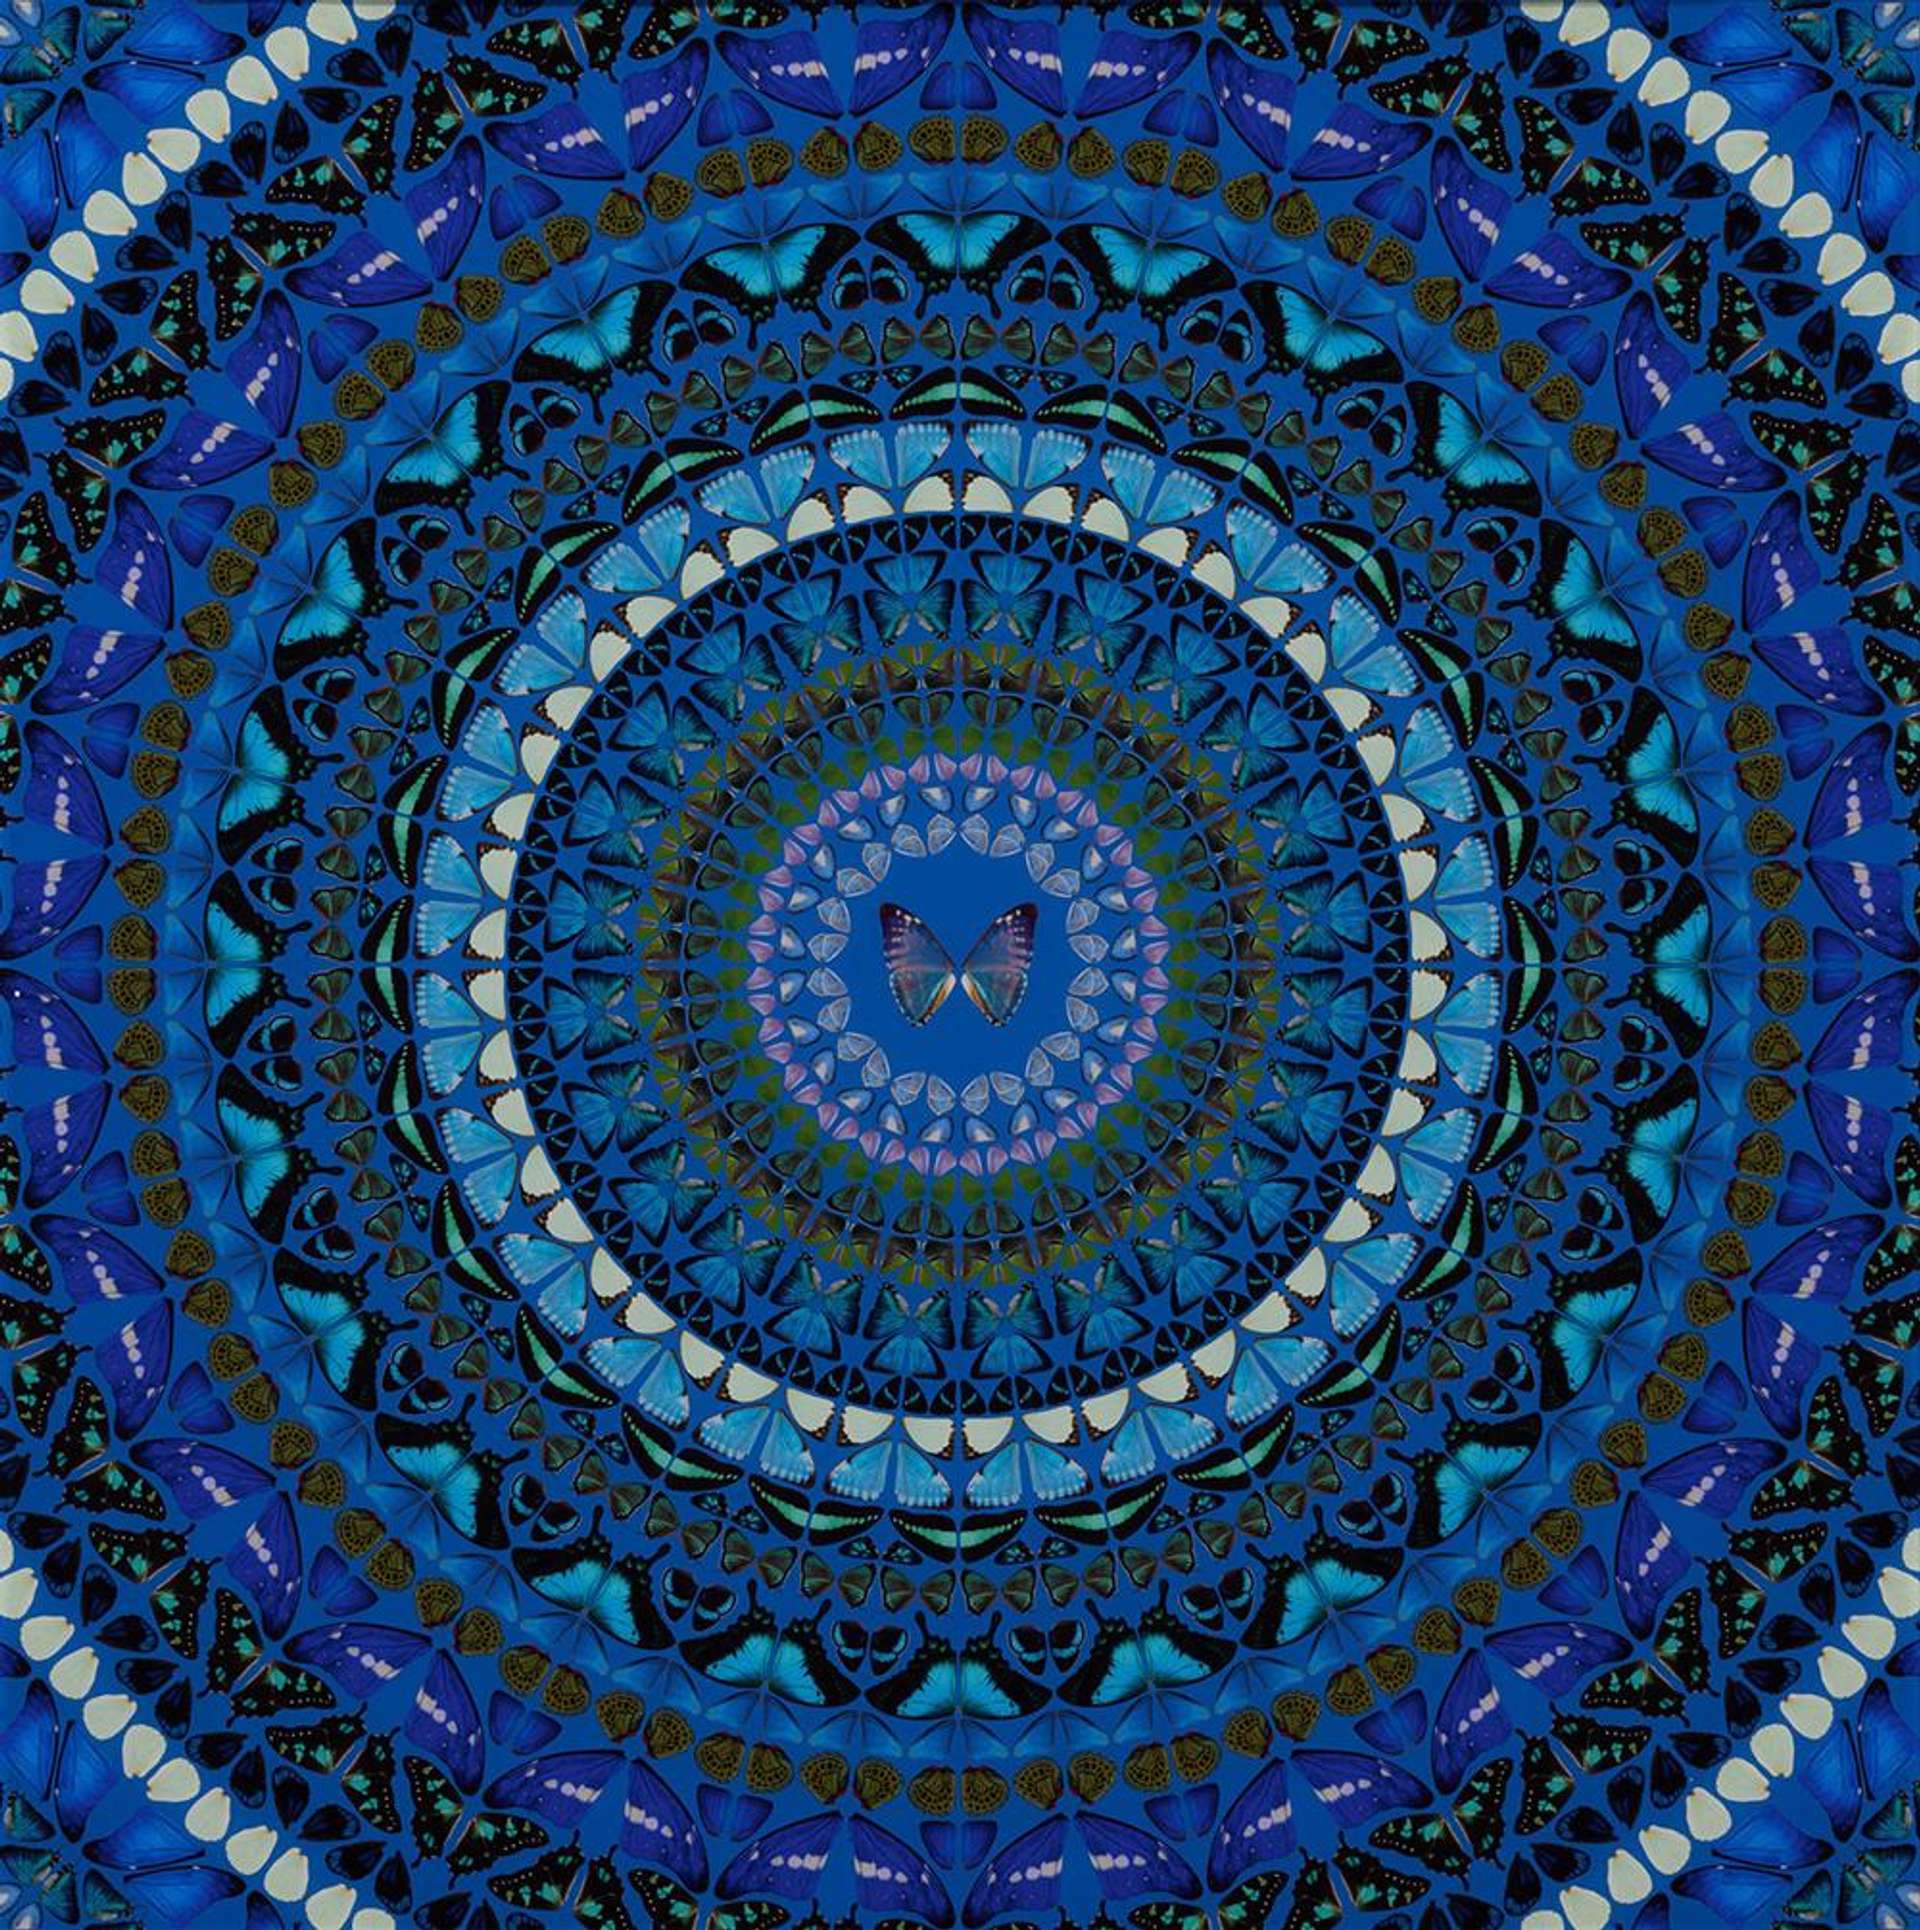 Damien Hirst’s H6-9 Water. A giclée print of a blue, circular, kaleidoscopic pattern of various butterflies. 